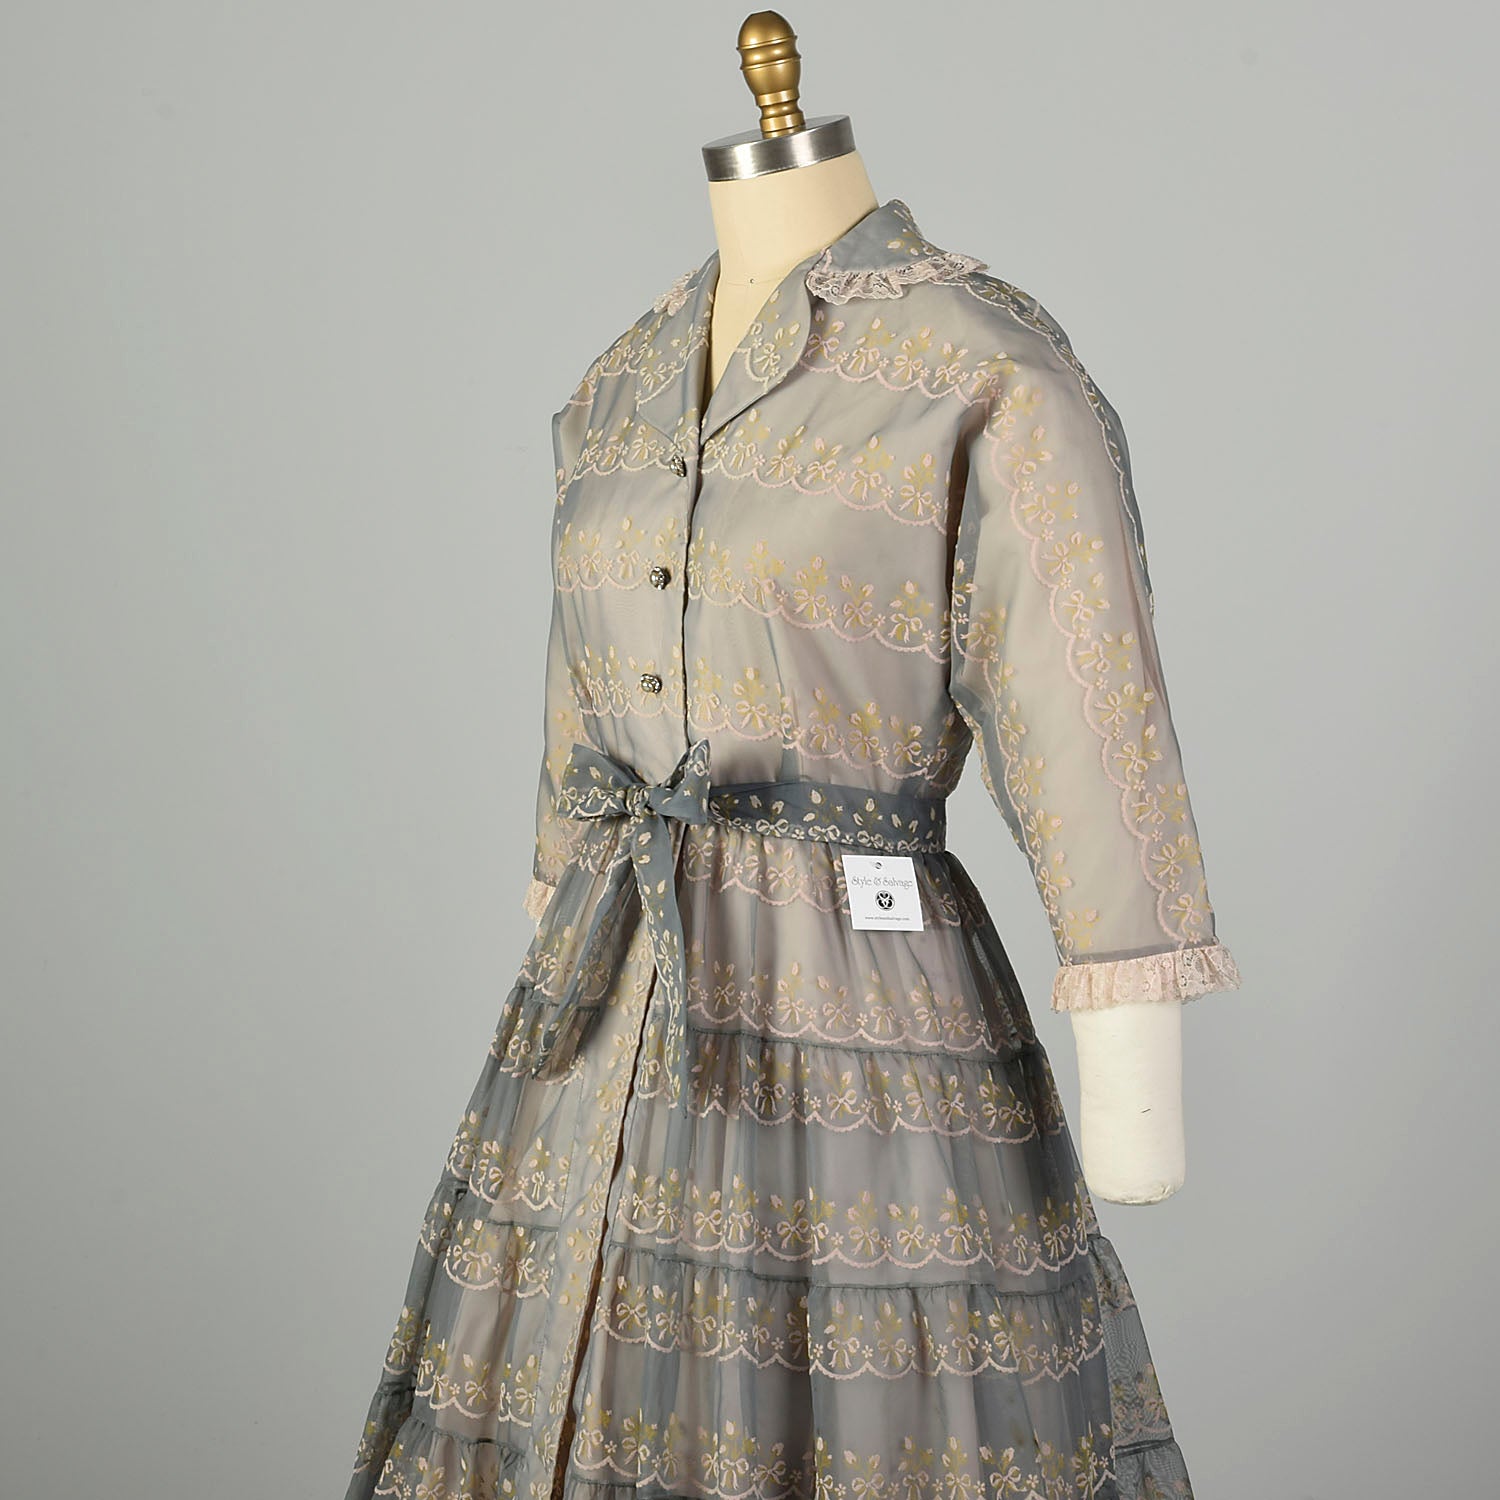 Small 1950s Dress Set Gray Flocked Ruffle Matching Petticoat